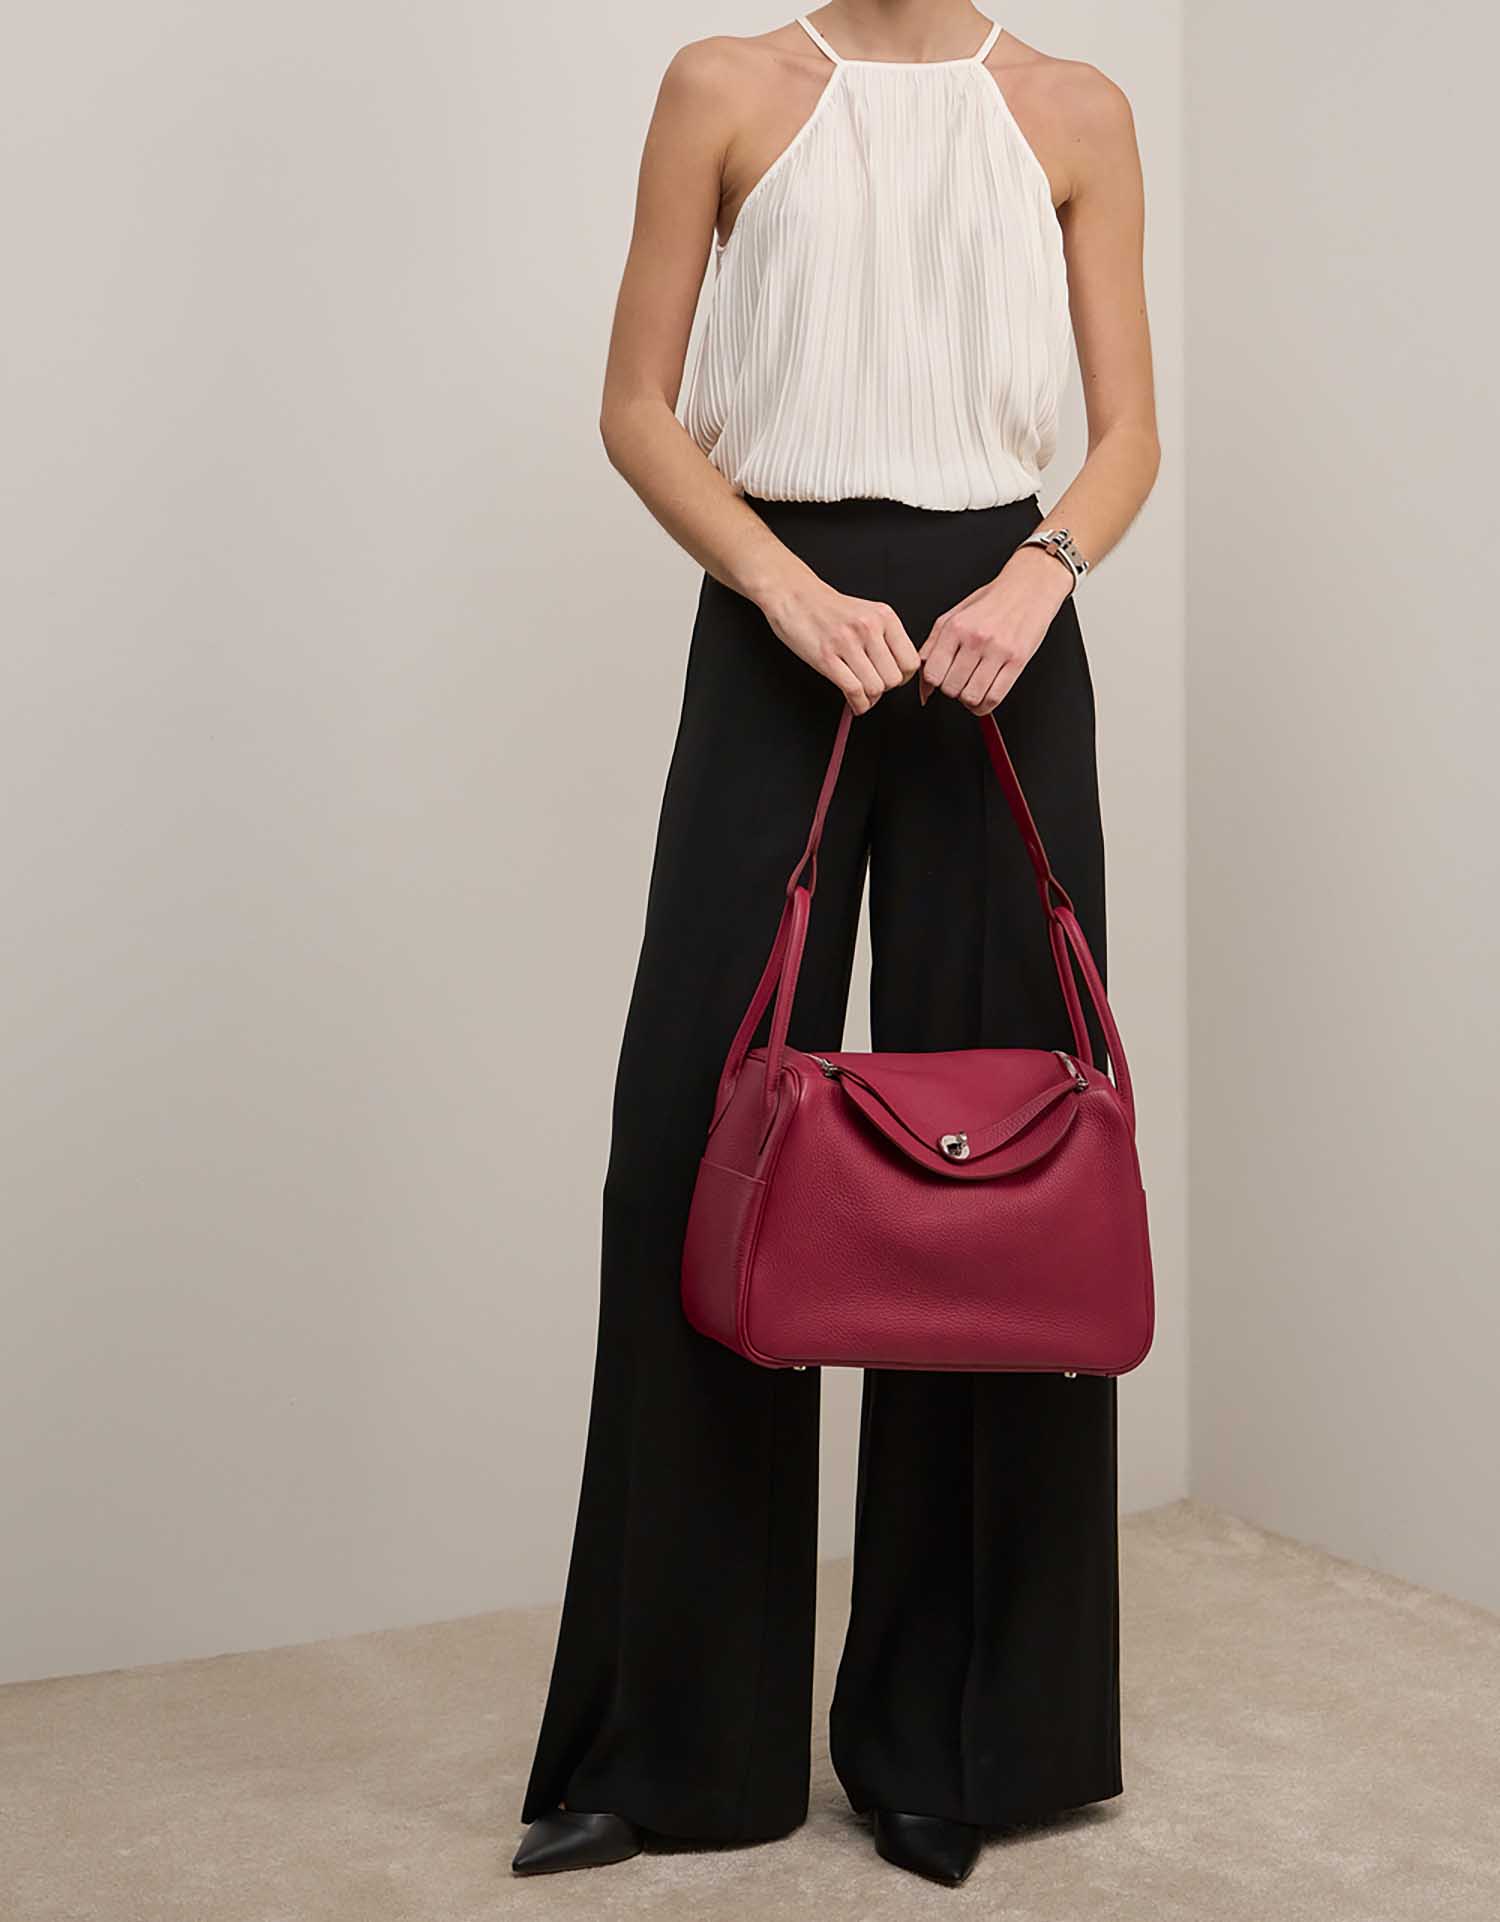 Hermès Lindy 34 Rubis auf Model | Verkaufen Sie Ihre Designertasche auf Saclab.com